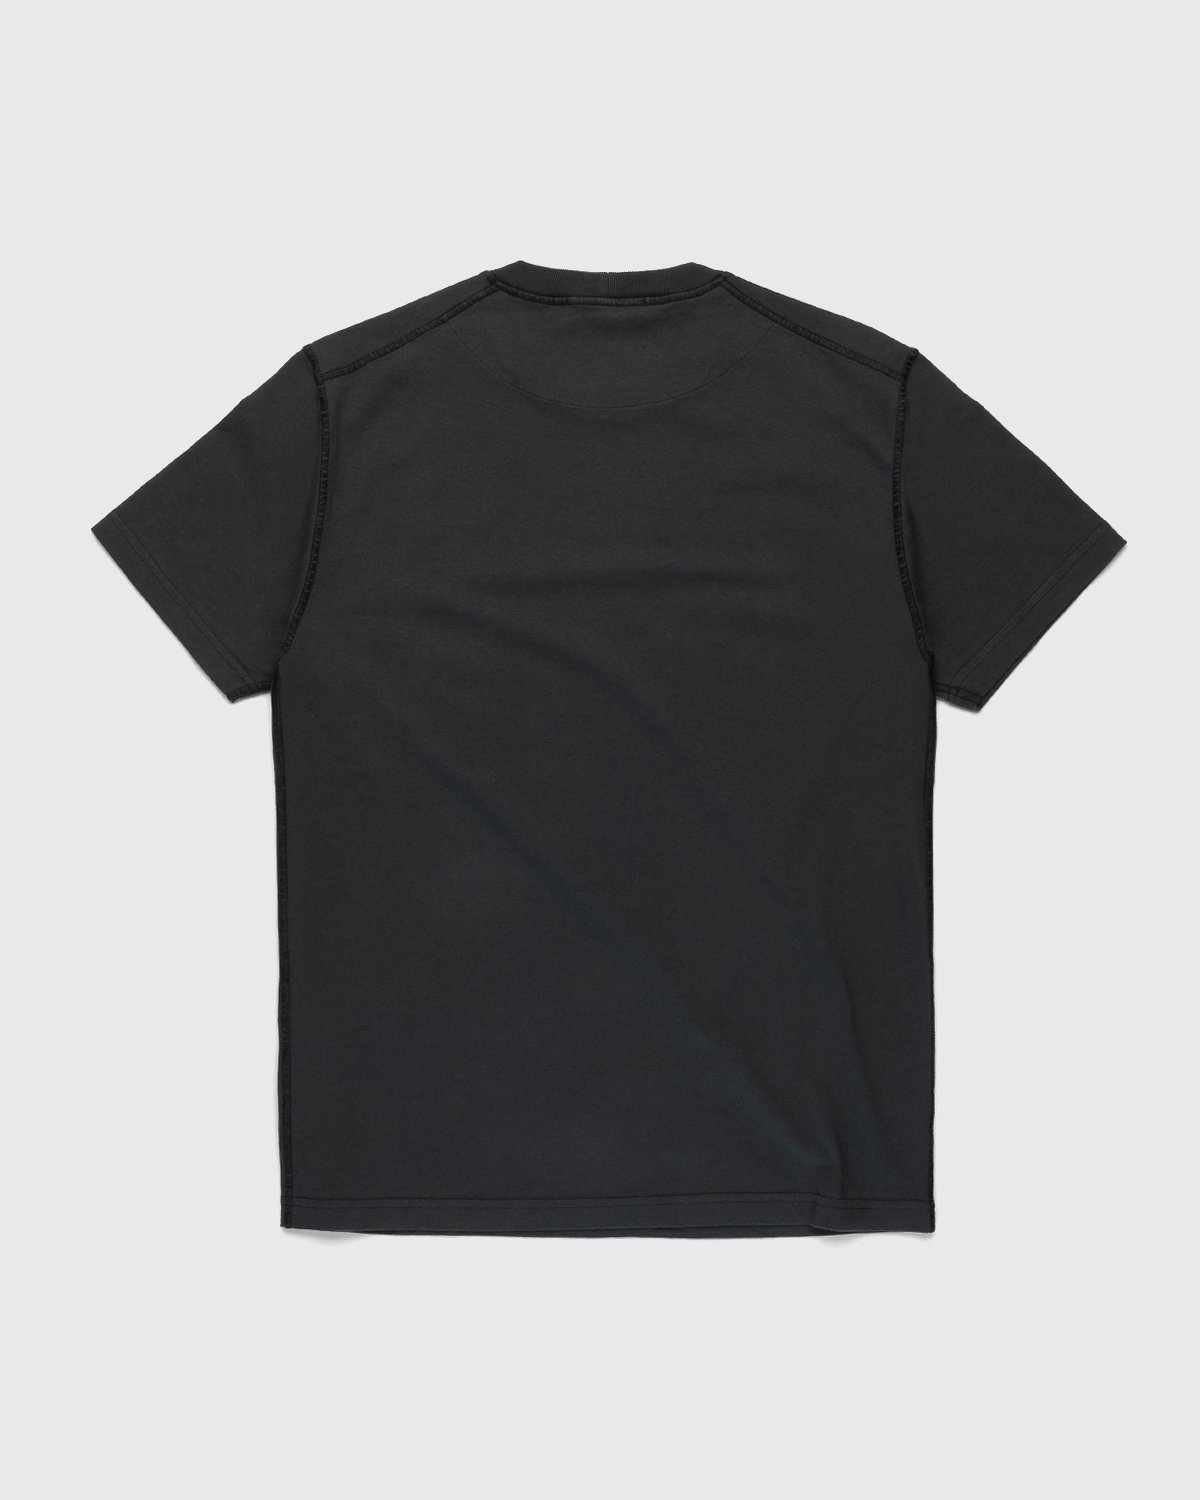 Stone Island - T-Shirt Charcoal - Clothing - Grey - Image 2